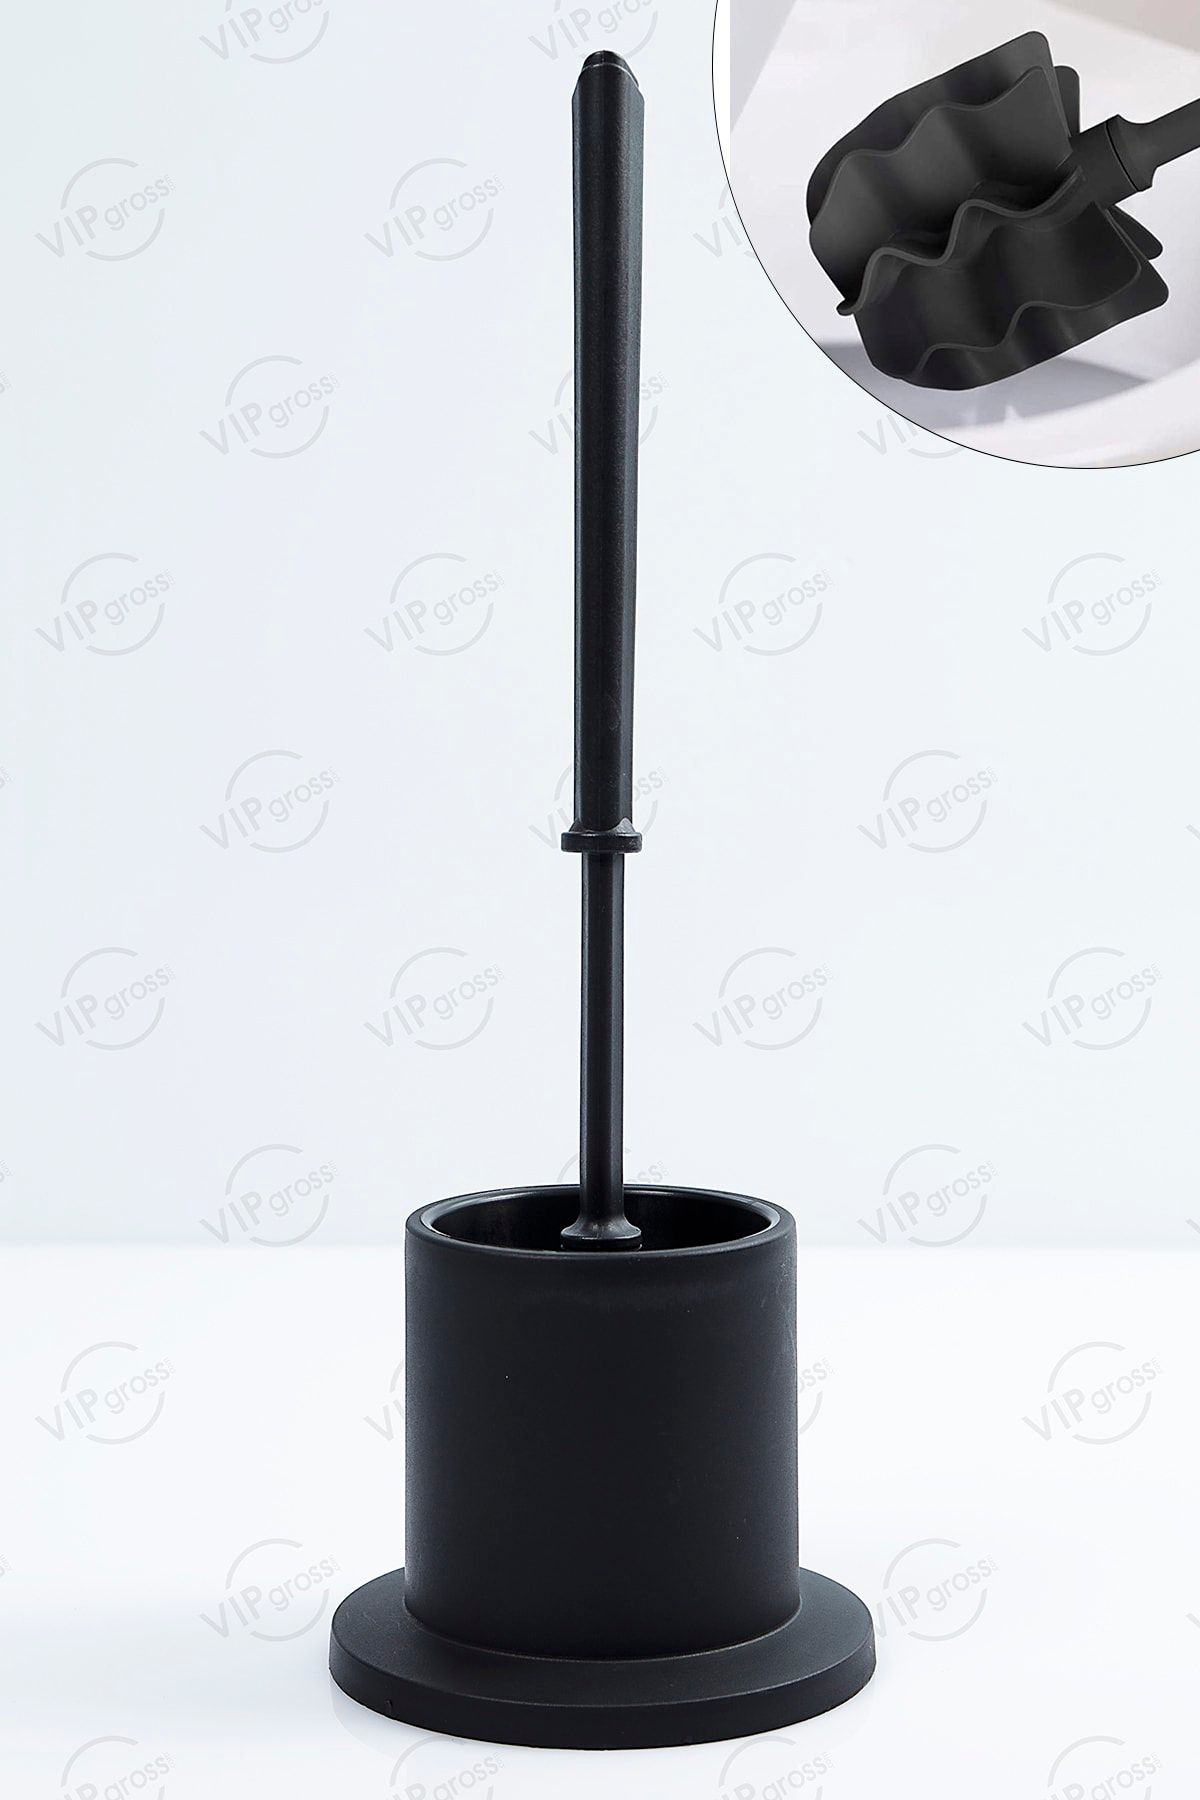 vipgross Silikon Banyo Hazneli Tuvalet Klozet Temizleme Fırçası Skf-02/siyah - M2